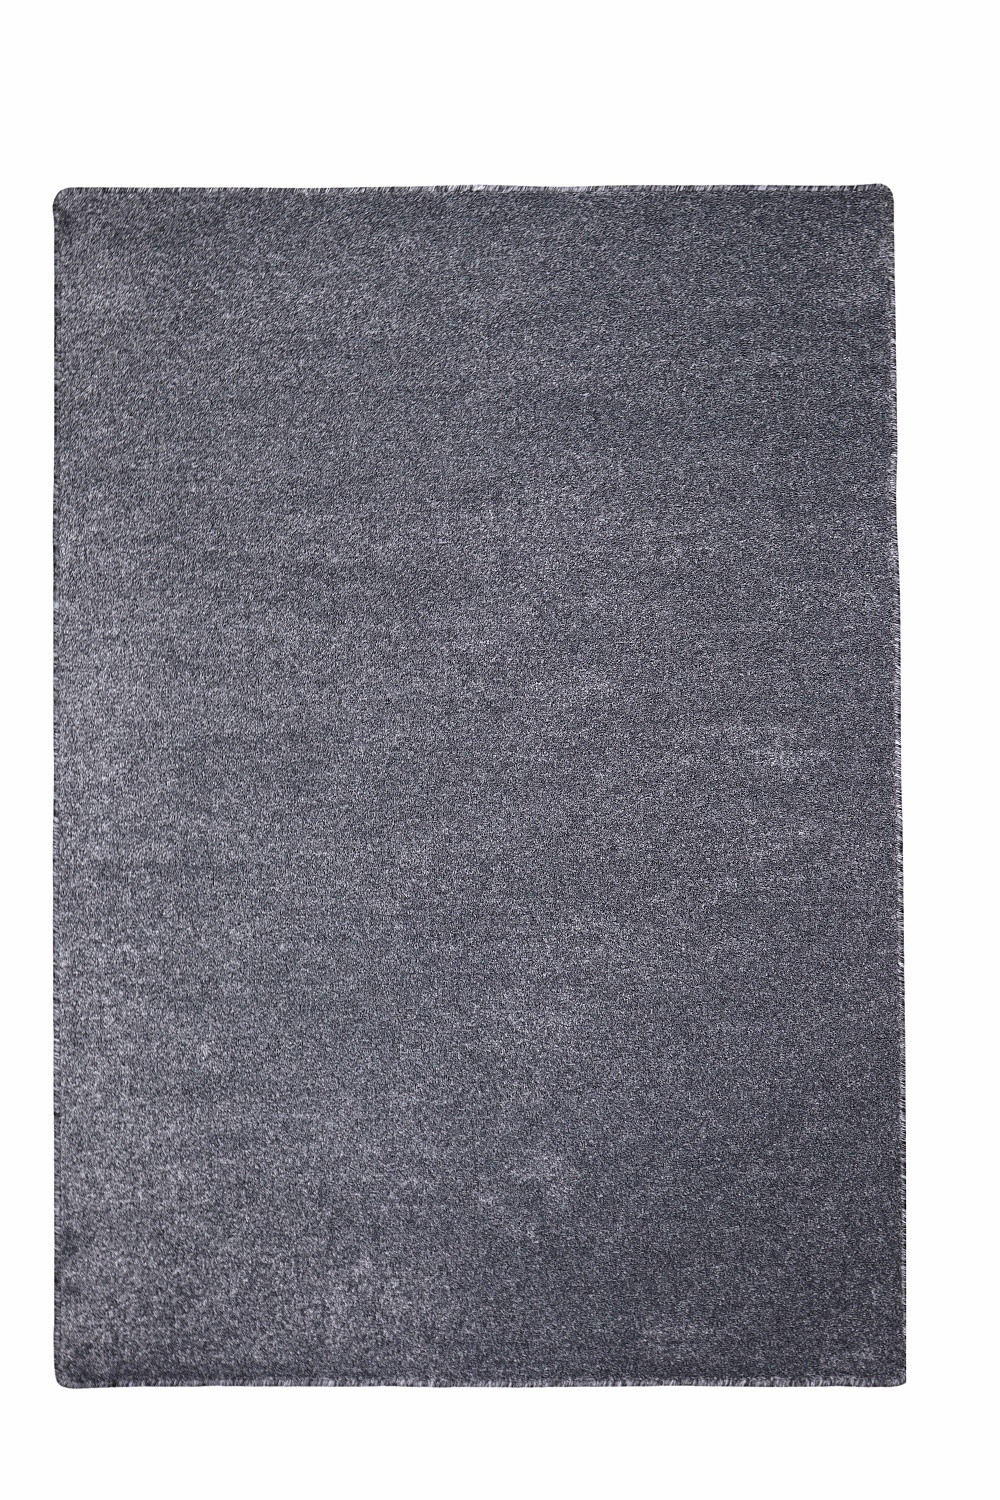 Levně Vopi koberce Kusový koberec Apollo Soft antra - 100x100 cm